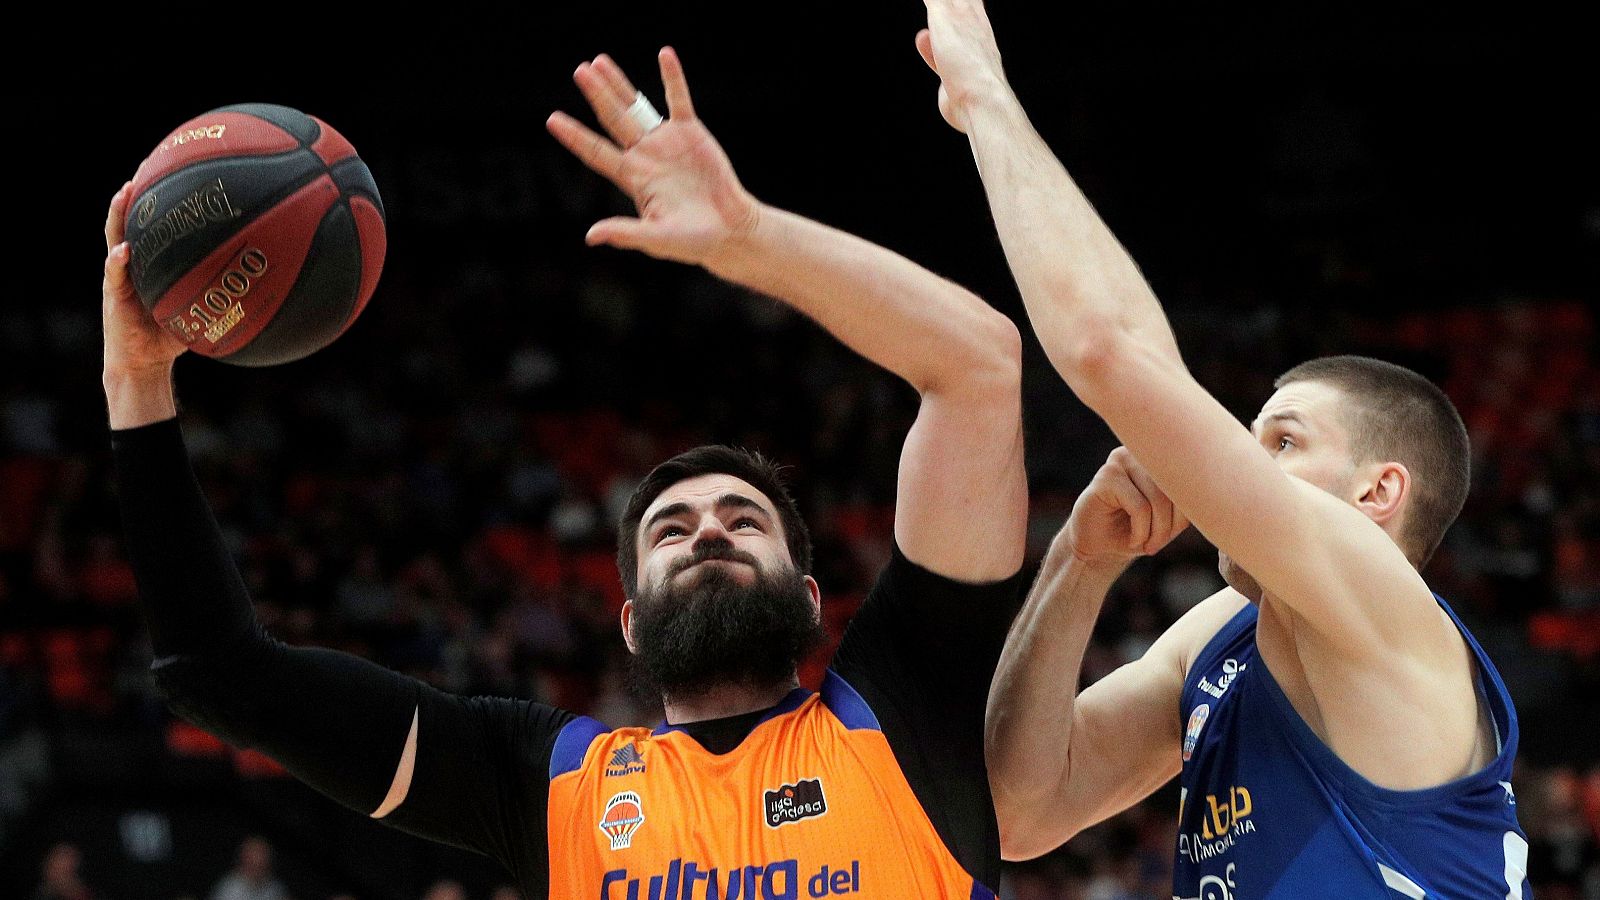 El pívot del Valencia Basket, Bojan Dubljevic (i), trata de encestar ante la oposición del ala-pí­vot del San Pablo Burgos, Dragan Apic (d)